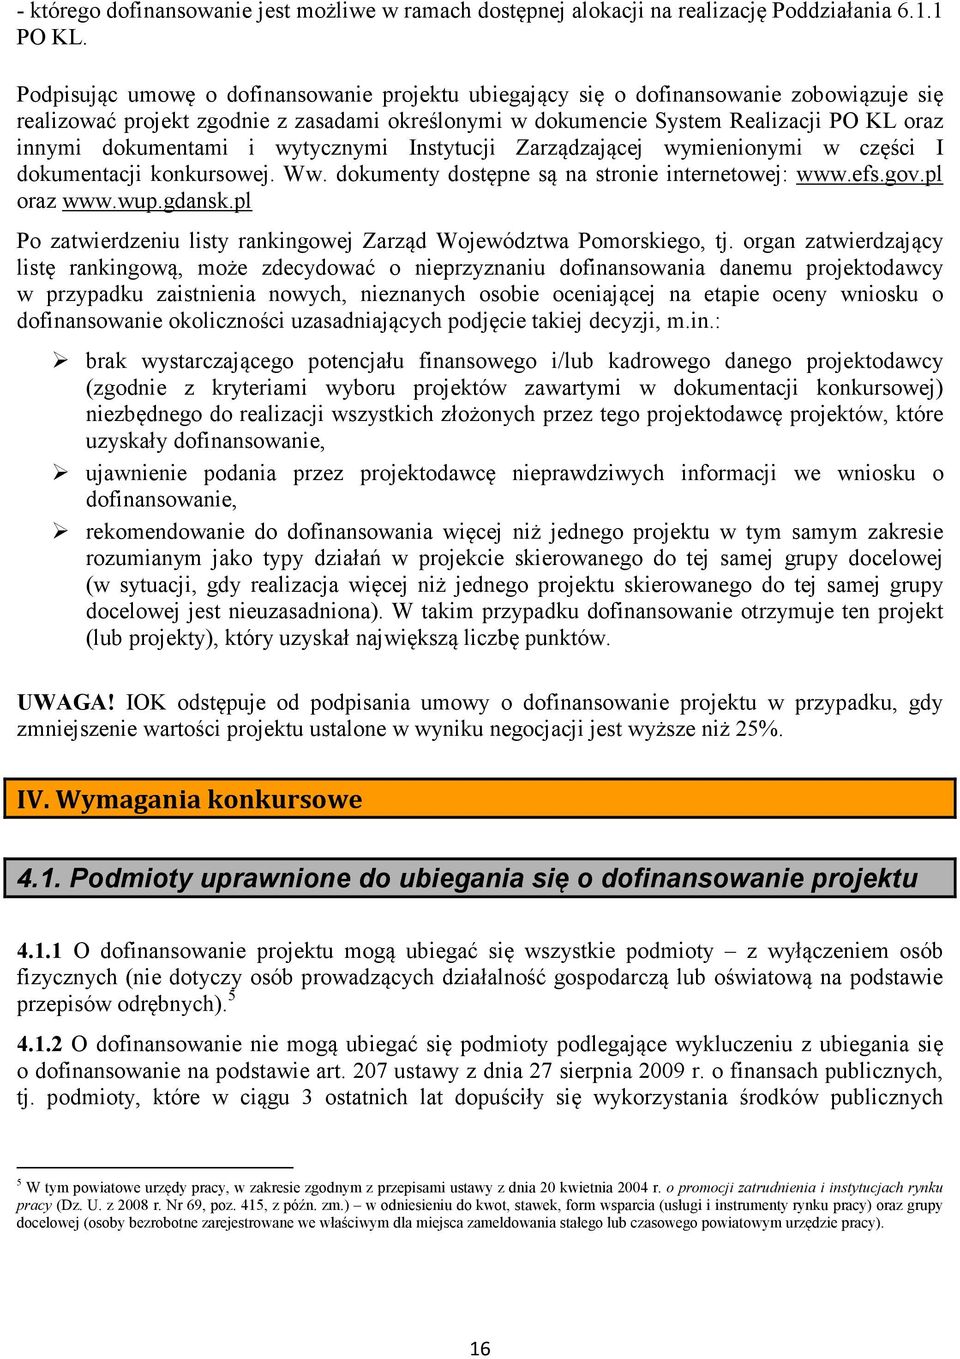 dokumentami i wytycznymi Instytucji Zarządzającej wymienionymi w części I dokumentacji konkursowej. Ww. dokumenty dostępne są na stronie internetowej: www.efs.gov.pl oraz www.wup.gdansk.